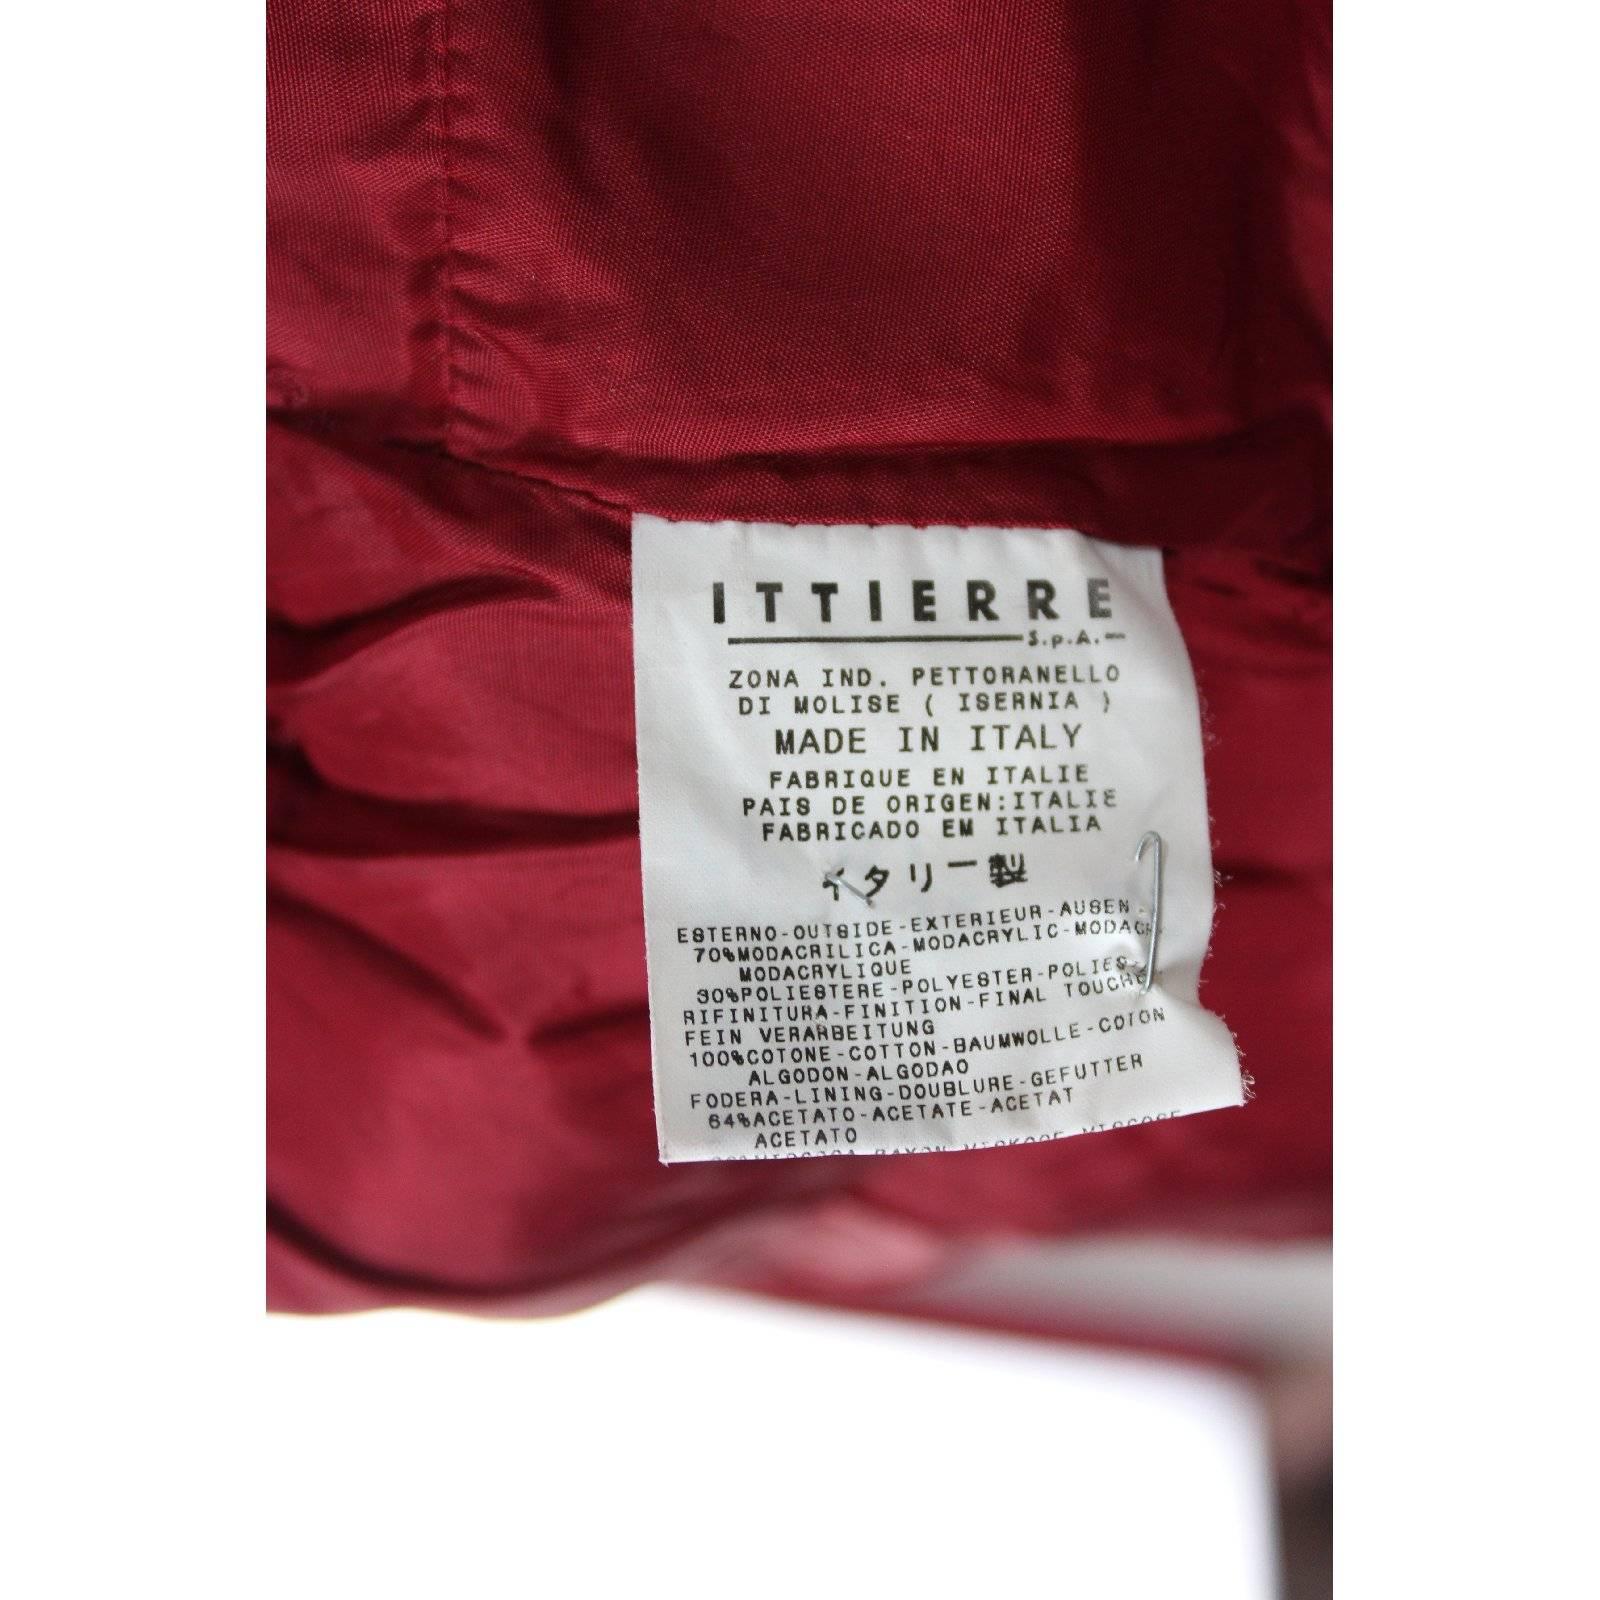 Dolce e Gabbana wool cotton red fur jeans jacket bolero women’s 1980s size 44 it 2